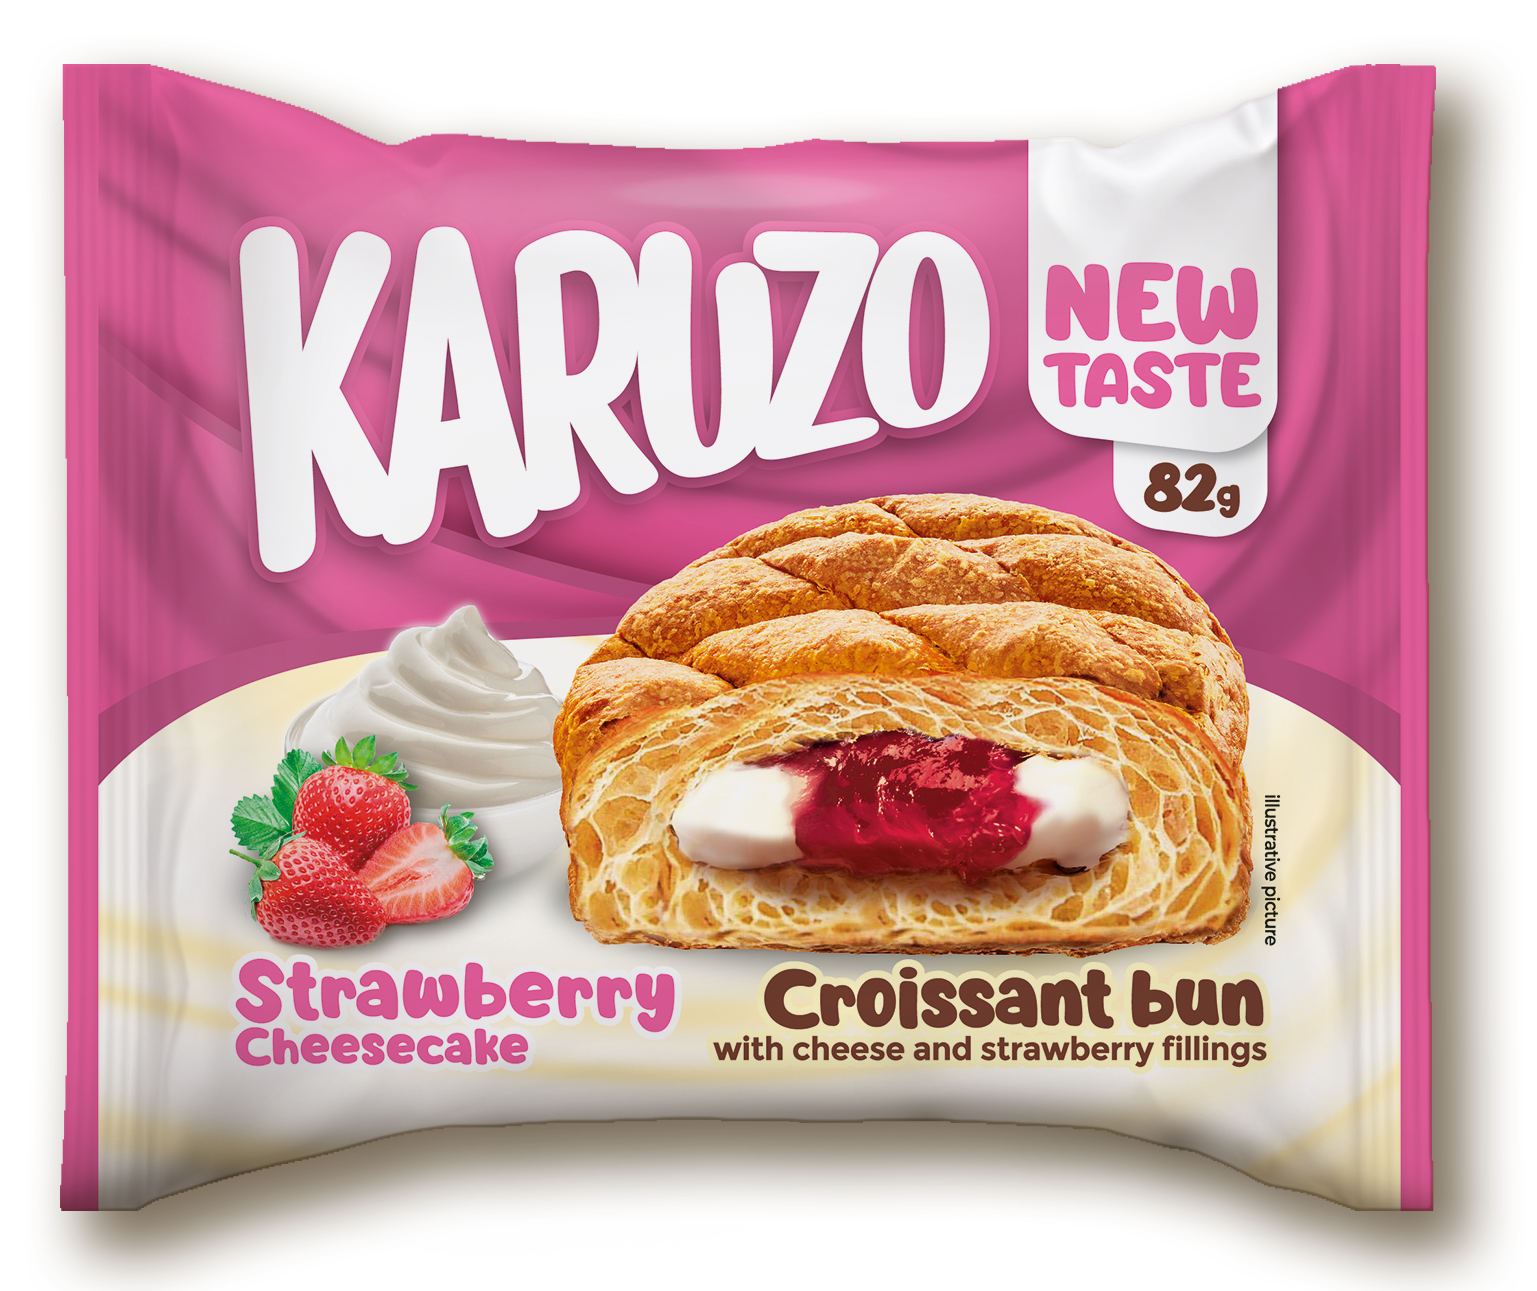 Karuzo 80g Strawberry new